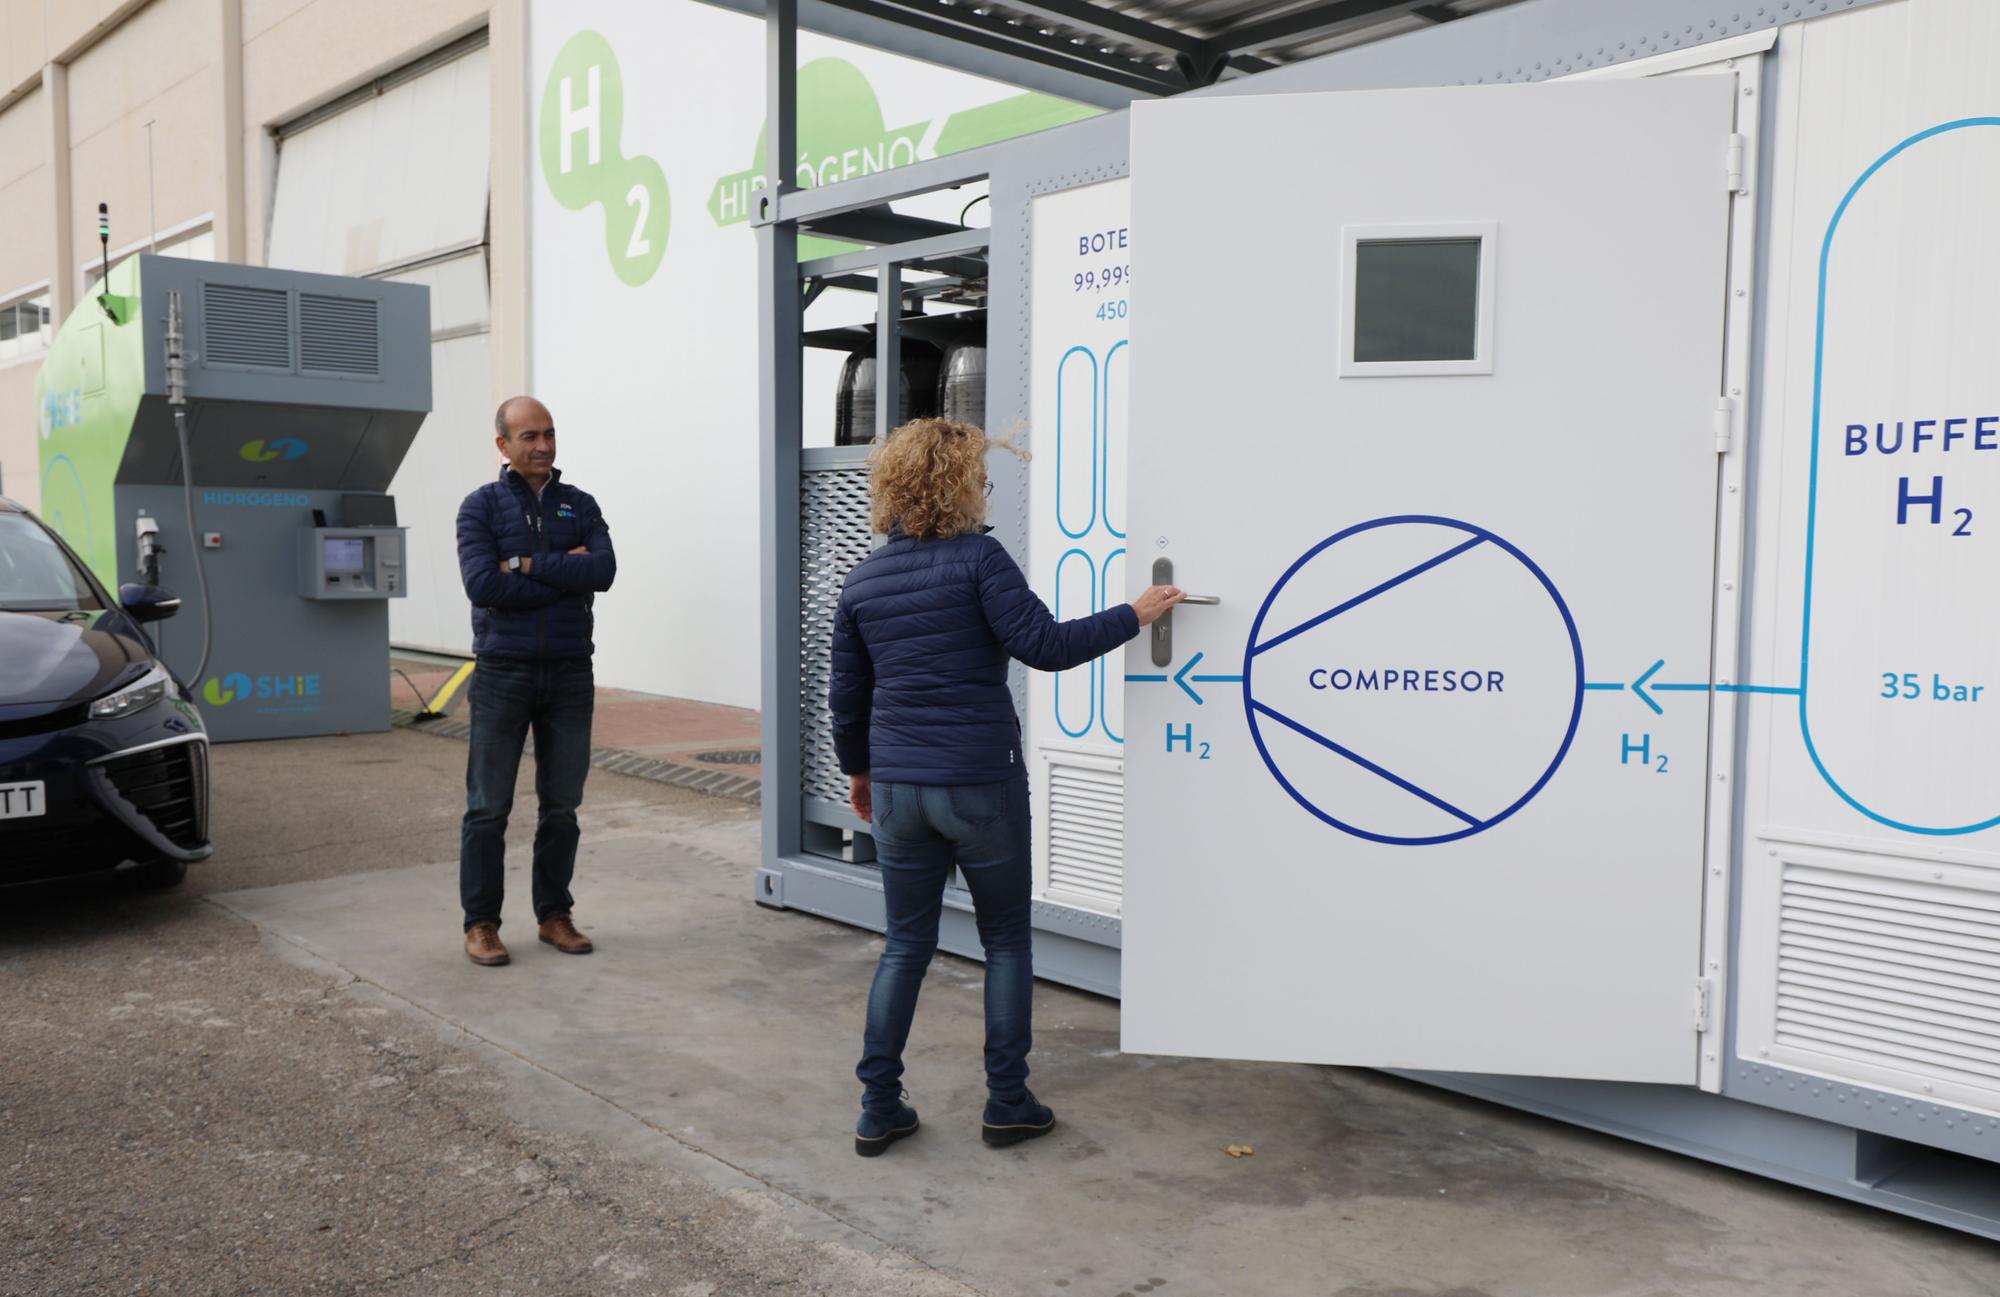 La primera compañía aragonesa que ofrece servicios de hidrógeno energético